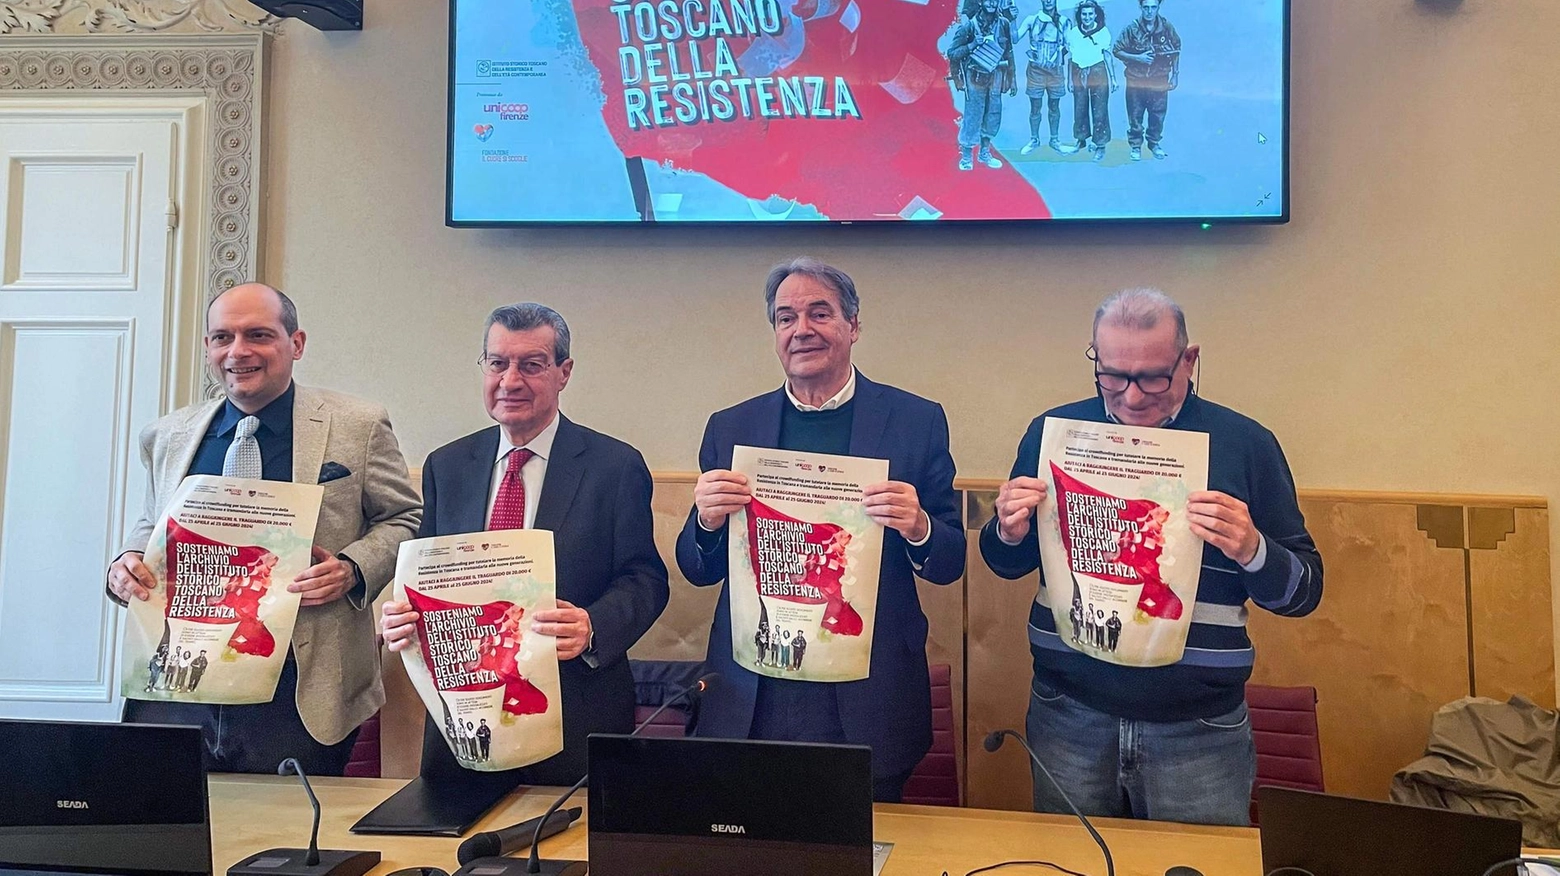 Istituto toscano della Resistenza: "Fondi a tutela di un patrimonio"